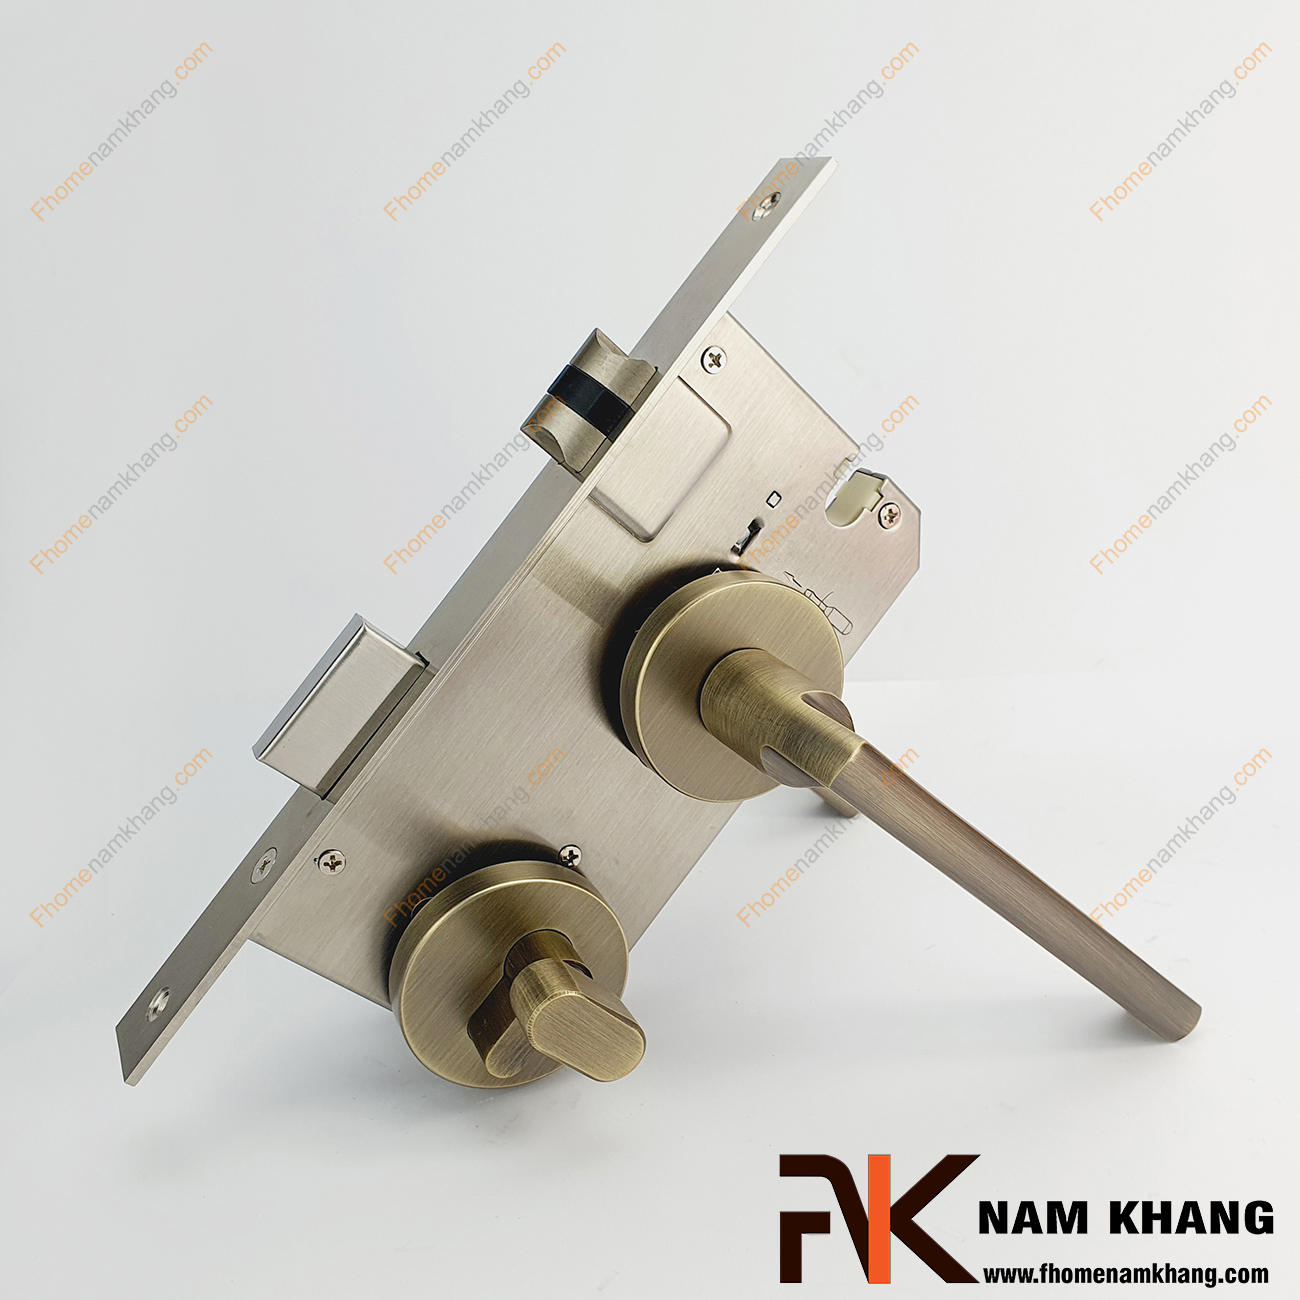 Khóa cửa phân thể hợp kim màu đồng rêu NK571-RX có thiết kế phần ốp khóa và tay gạt riêng biệt, khá nhỏ gọn và tạo được sự nổi bật độc đáo của một dòng khóa cửa.